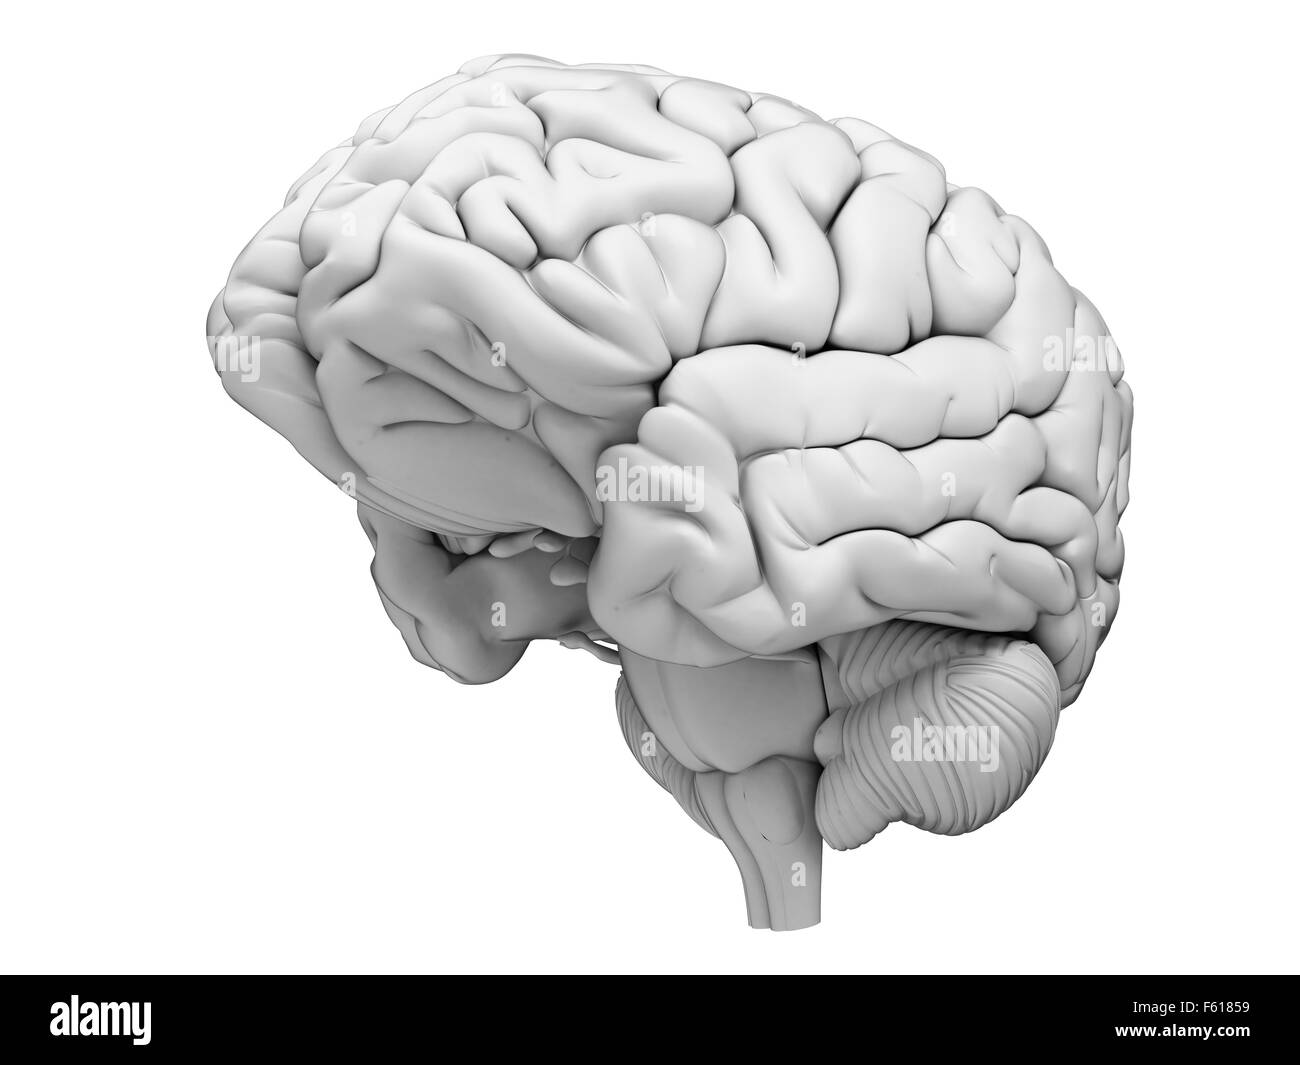 Dal punto di vista medico illustrazione accurata del cervello umano Foto Stock